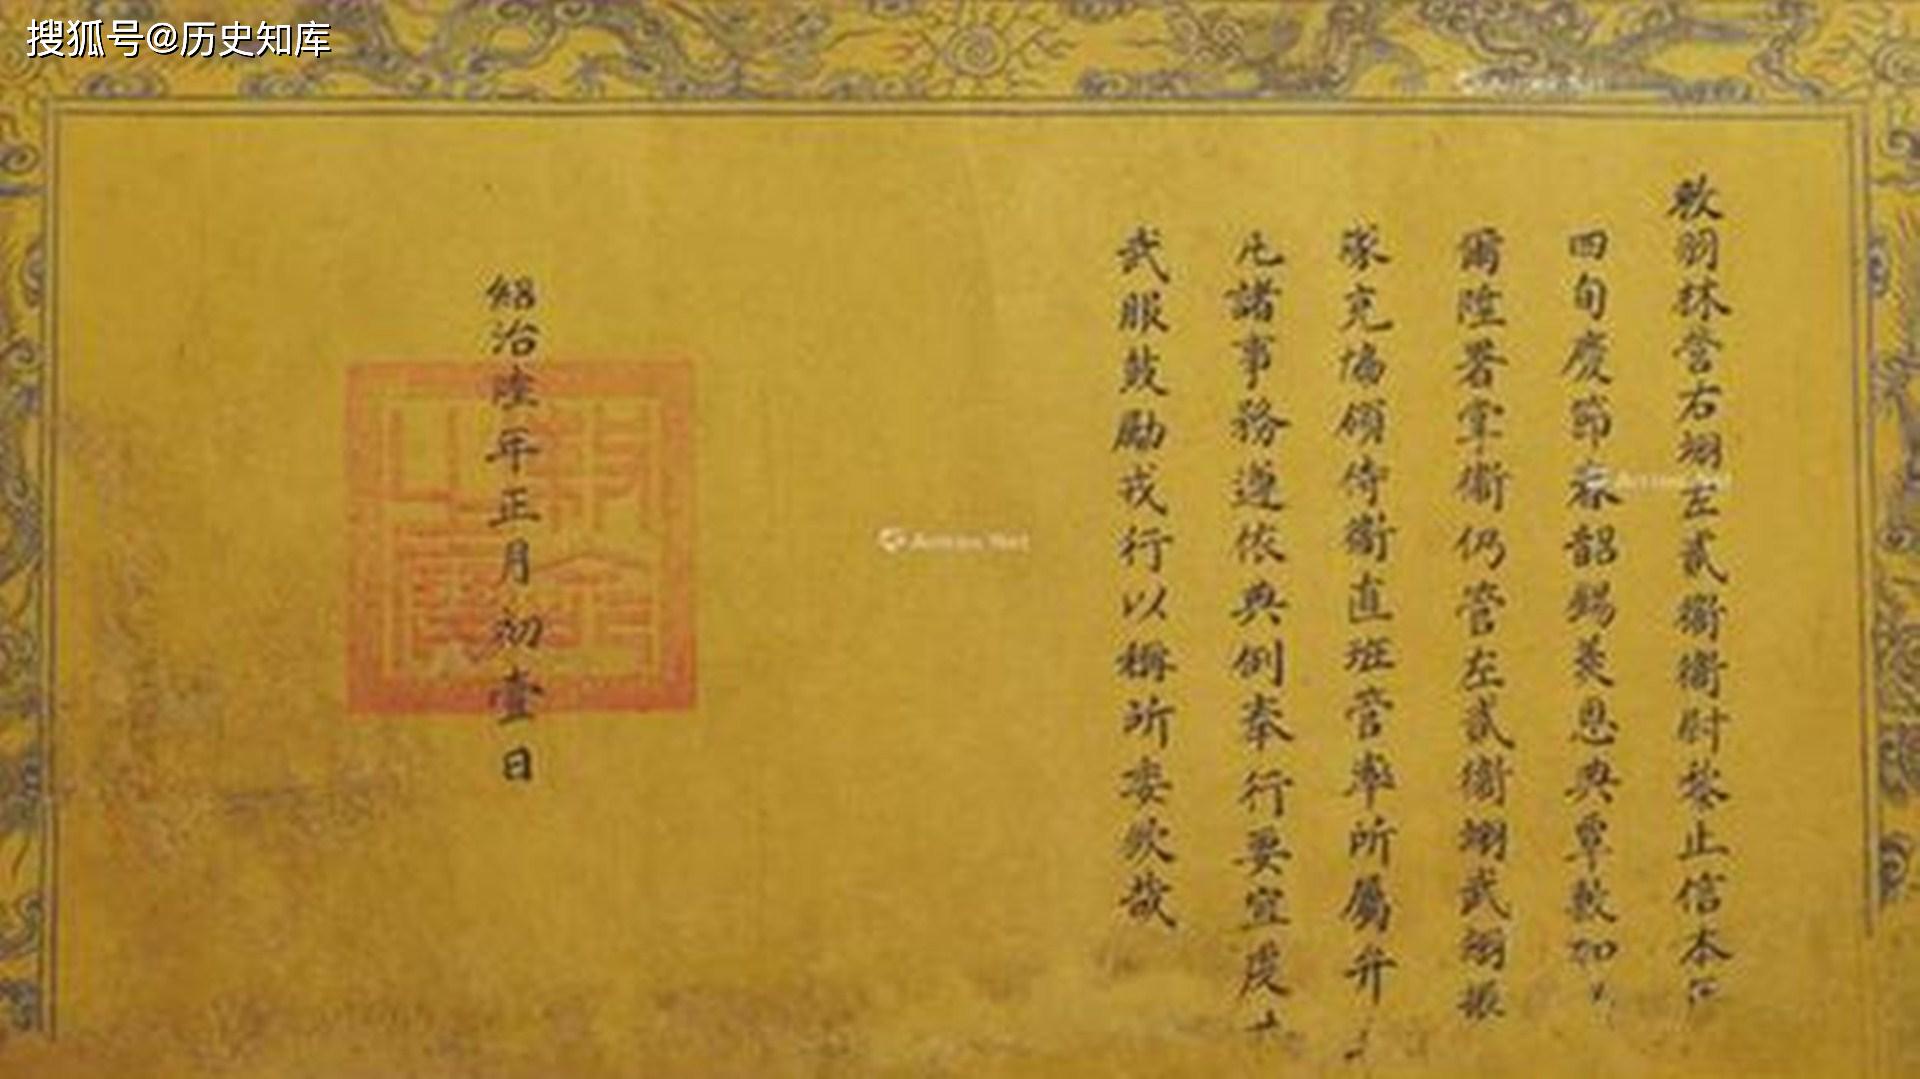 原创越南某古墓出土一道圣旨,写的全是汉字,越南专家请我国帮忙